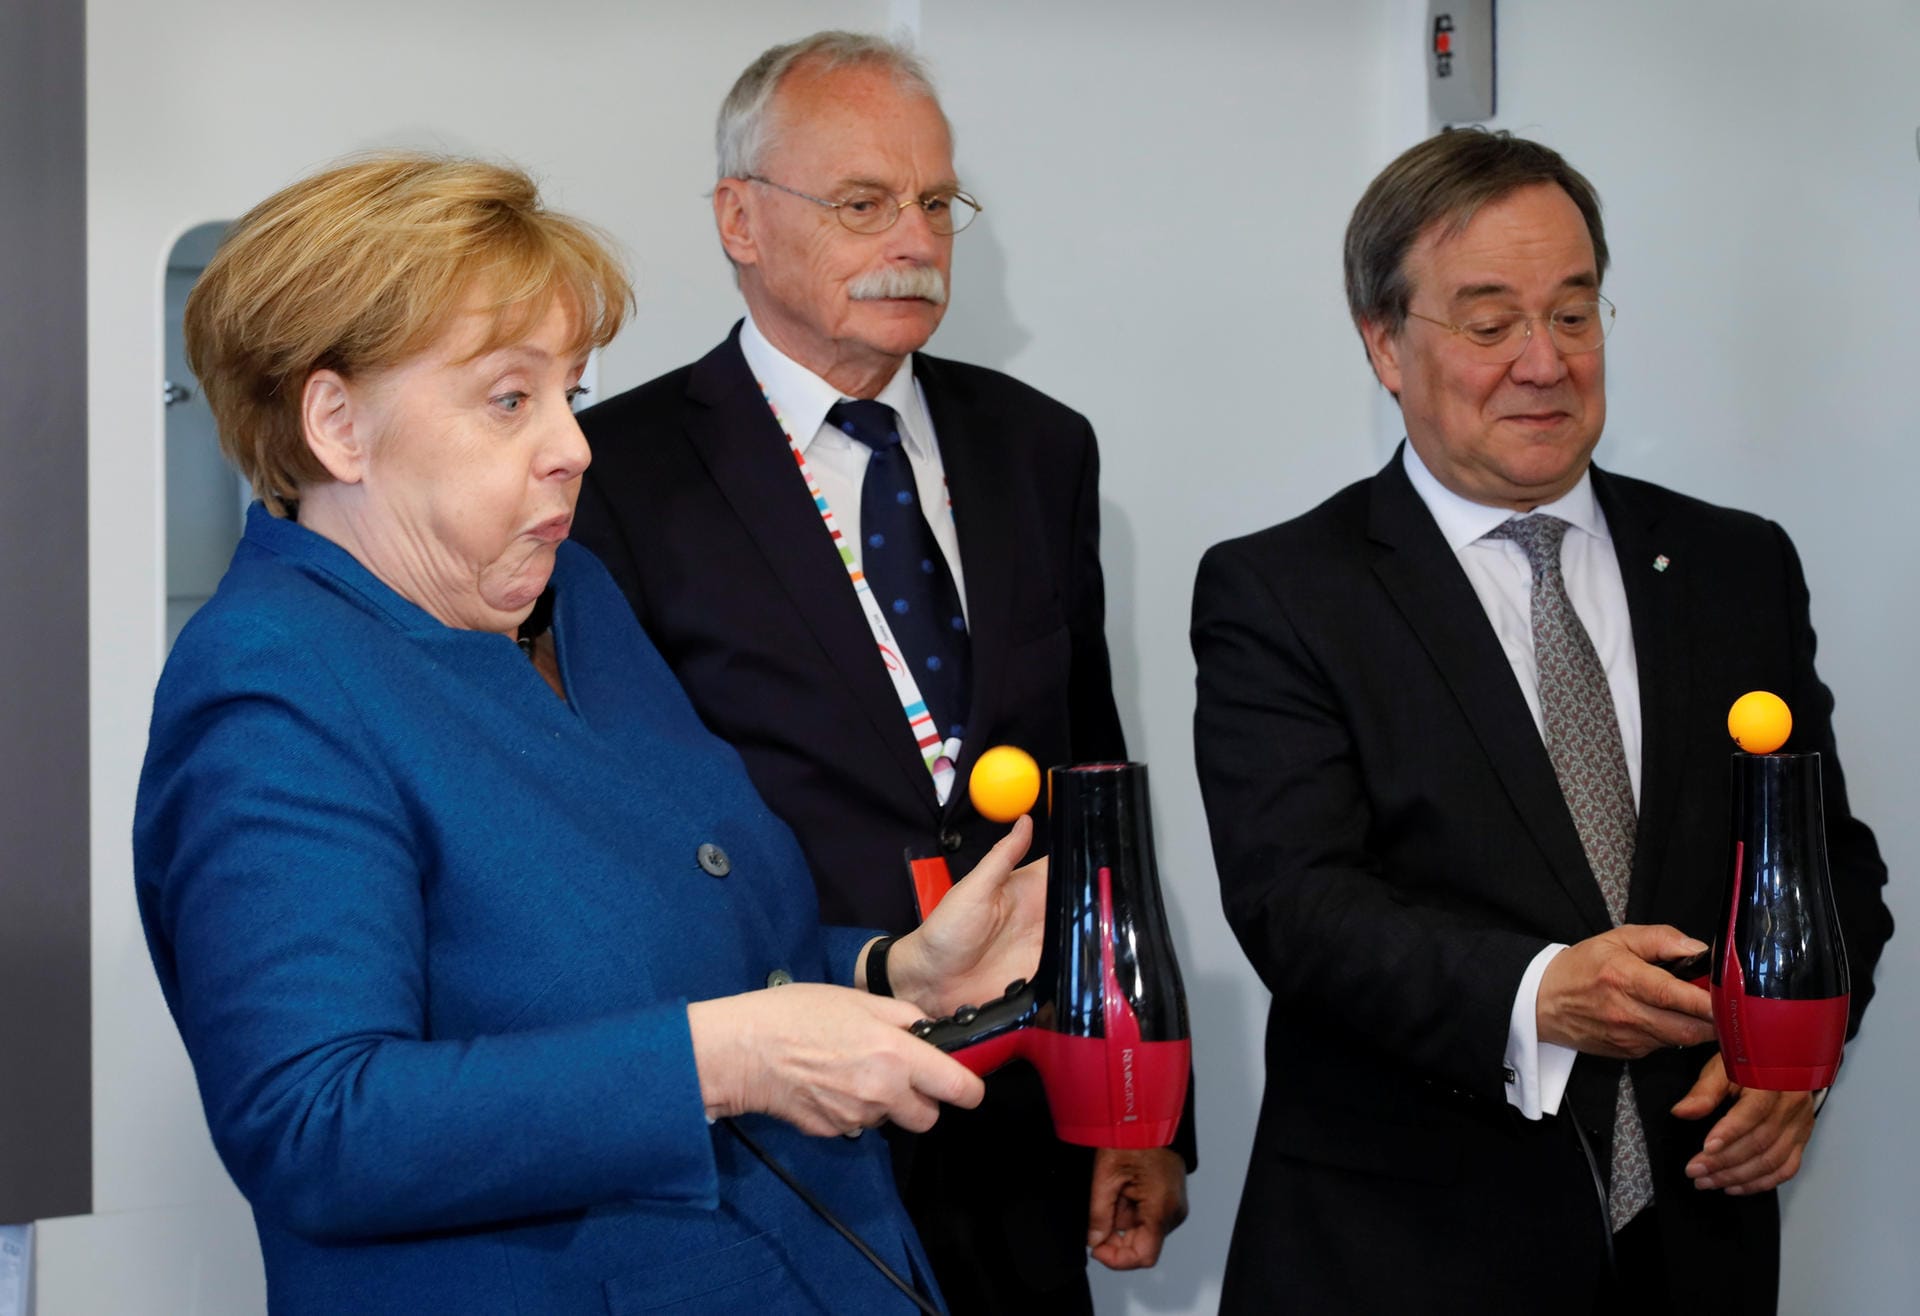 Bundeskanzlerin Angela Merkel bei einem Experiment mit Tischtennisball und Fön, gemeinsam mit Ernst-Andreas Ziegler und Armin Laschet (r.), dem Ministerpräsidenten von Nordrhein-Westfalen.